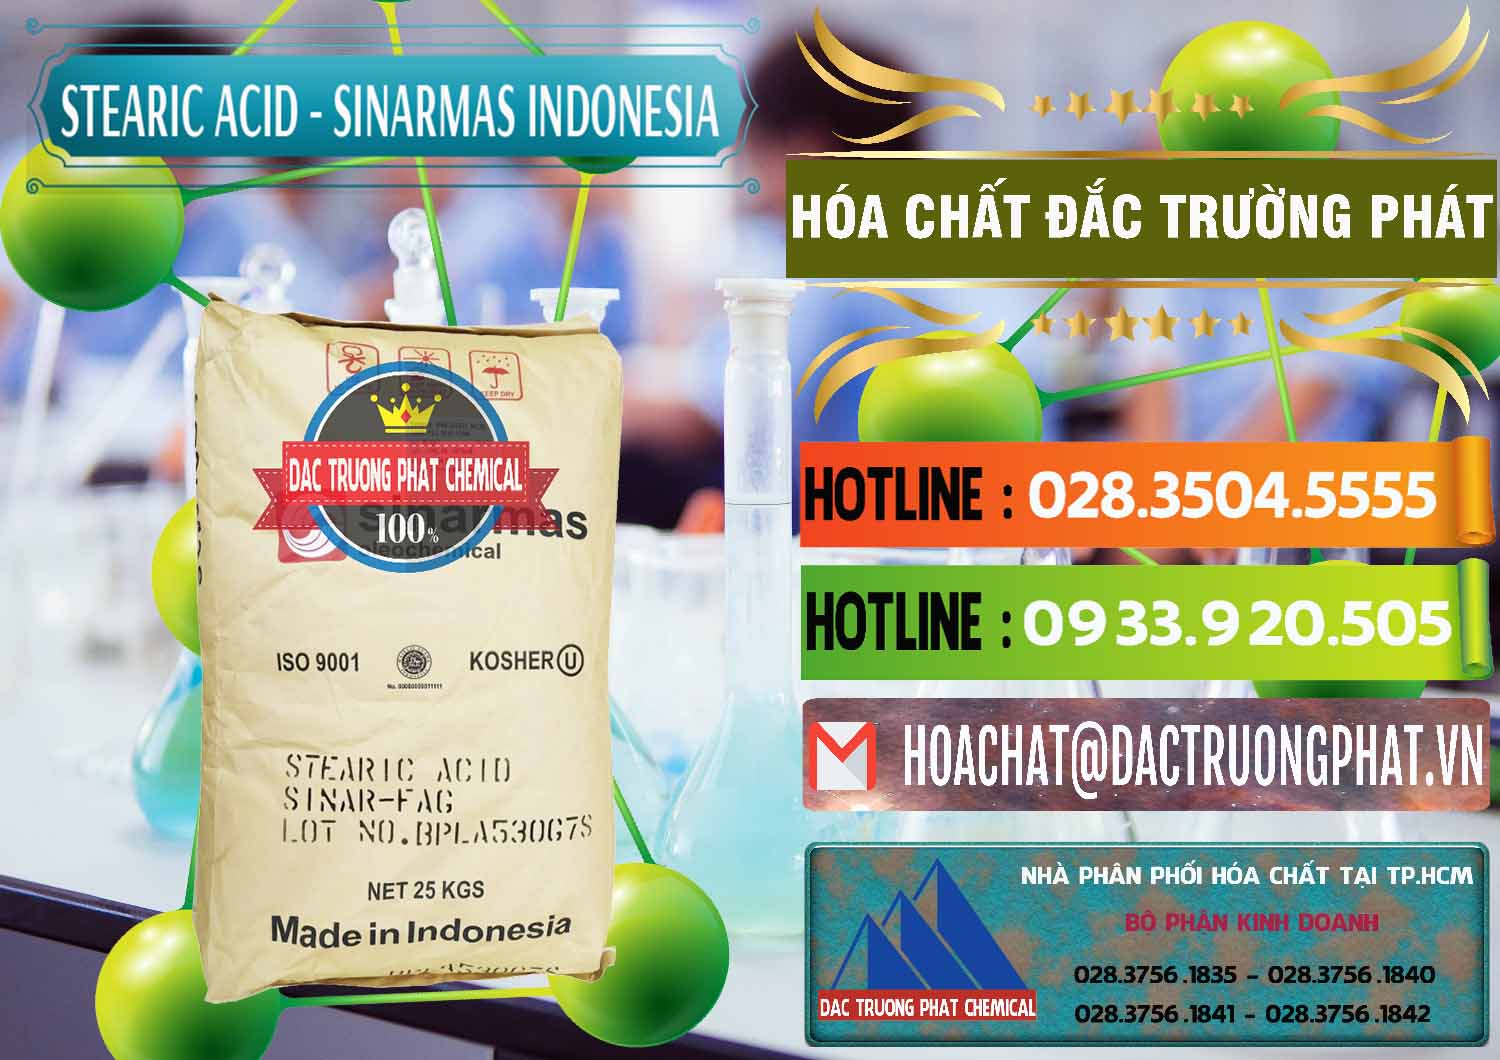 Chuyên kinh doanh và bán Axit Stearic - Stearic Acid Sinarmas Indonesia - 0389 - Chuyên phân phối ( bán ) hóa chất tại TP.HCM - cungcaphoachat.com.vn